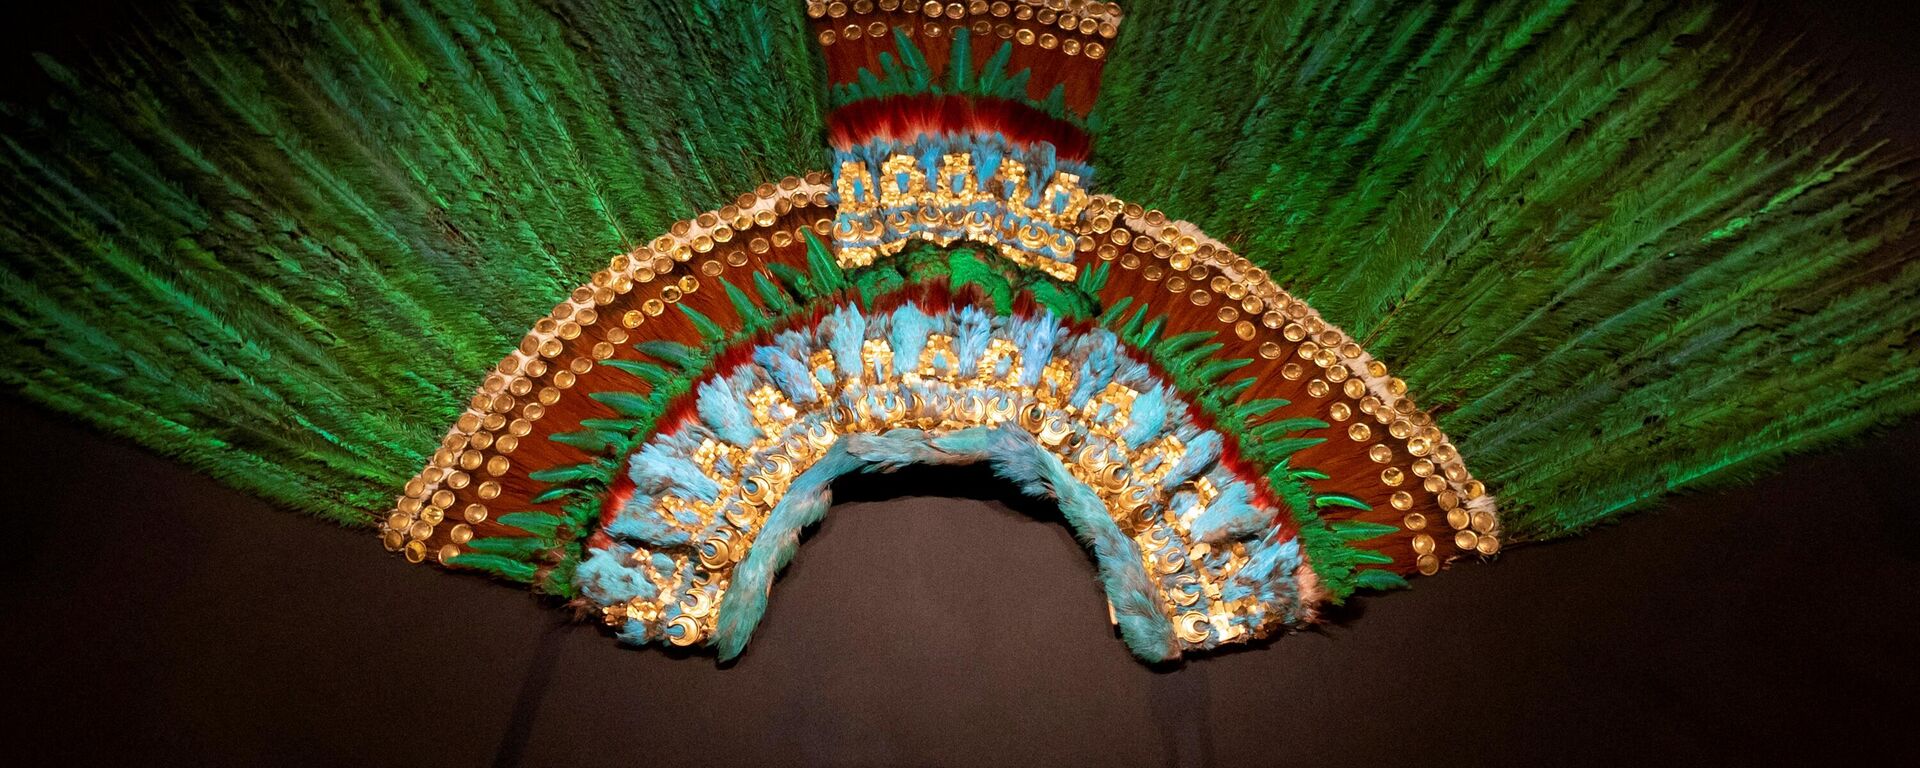 O cocar do imperador asteca Moctezuma Xocoyotzin (1466-1520) ou Moctezuma II, também conhecido como 'El Penacho', é exibido no Museu de Etnologia (Welt Museum) em Viena em 15 de outubro de 2020 - Sputnik Brasil, 1920, 19.02.2022